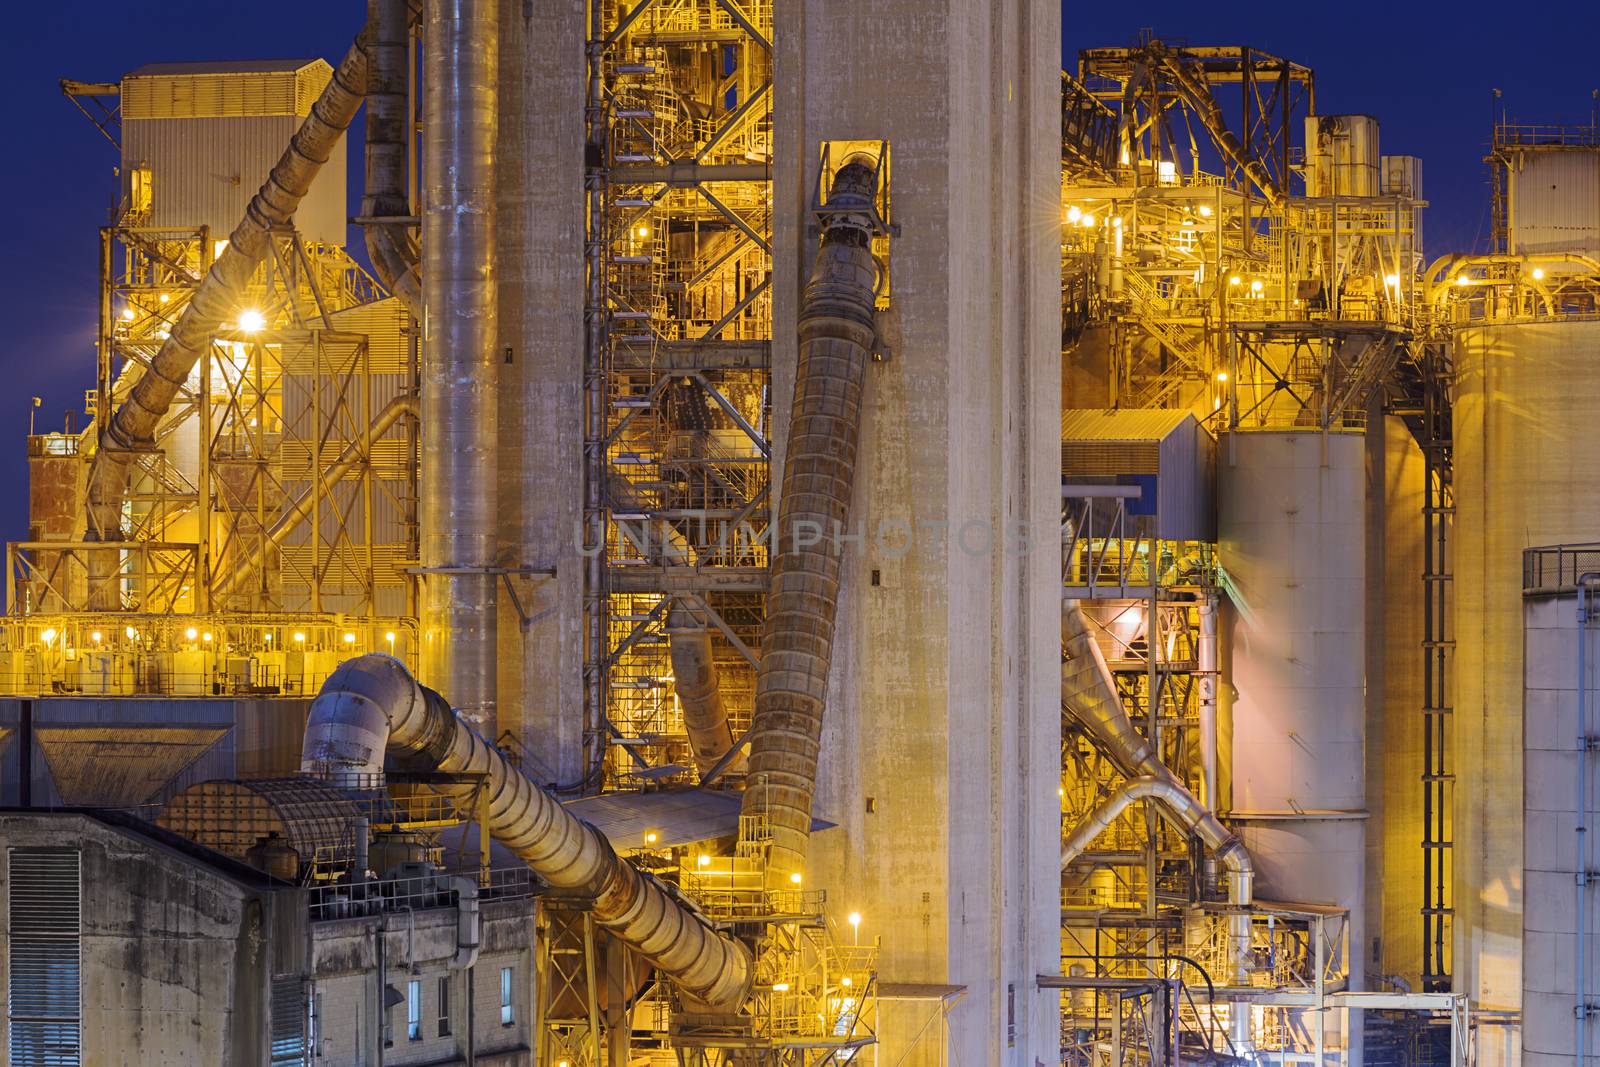 Hong Kong Cement plant at night